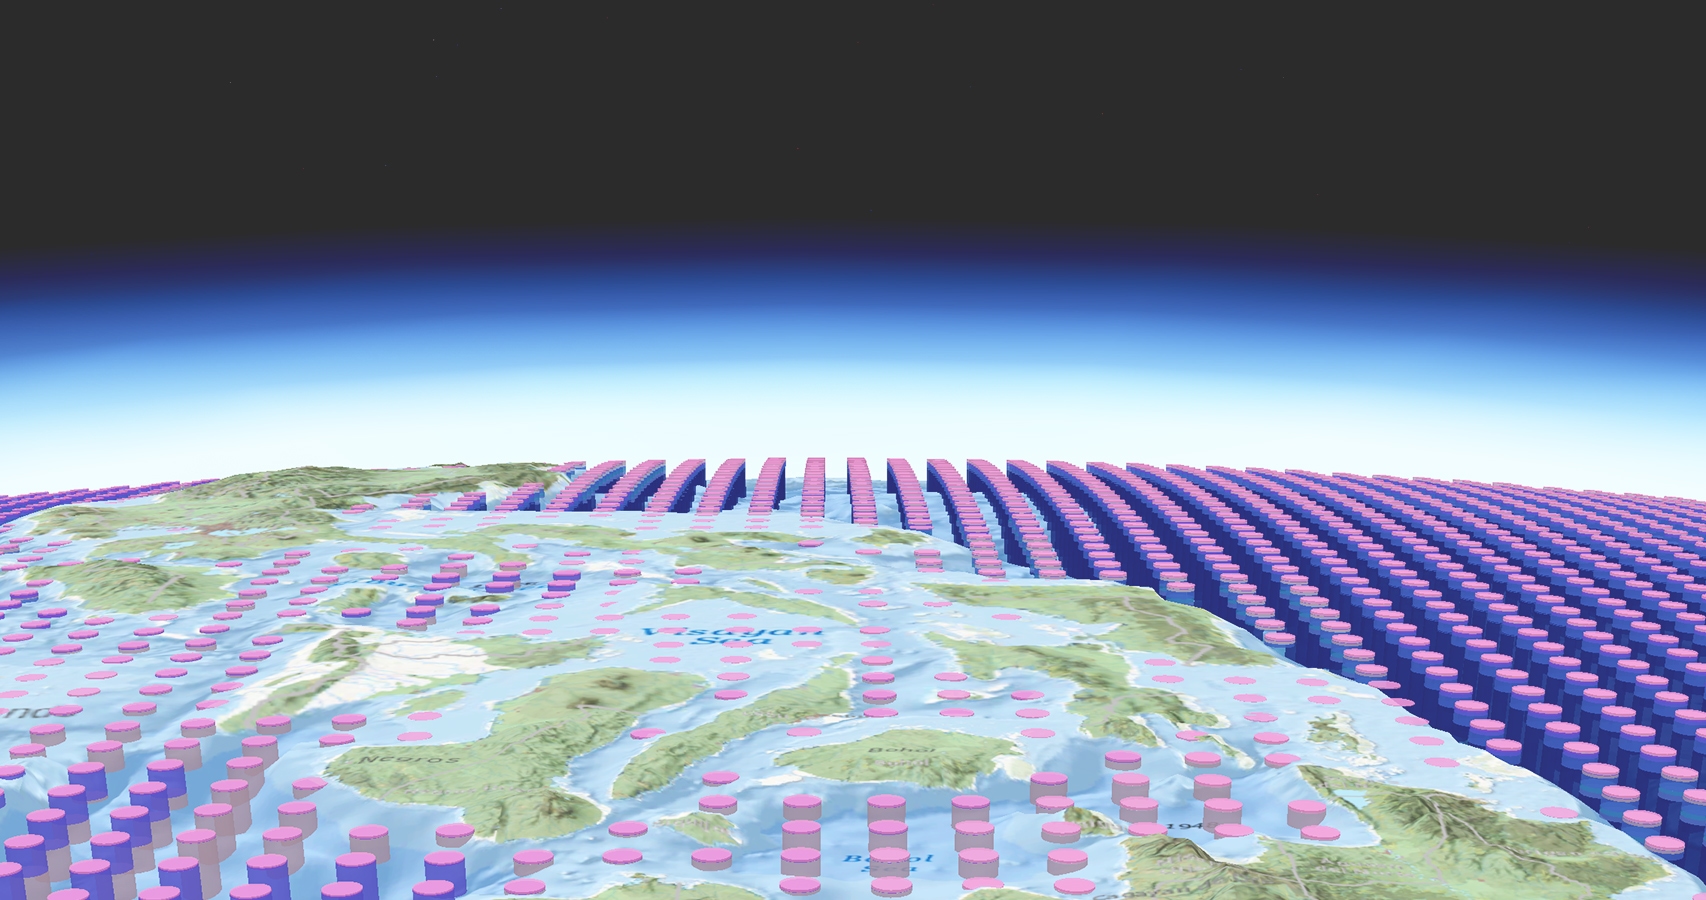 Grafische Darstellung mit rosa und violetten Zylindern, die in Reihen angeordnet sind und eine stilisierte Konturlinienkarte der Erde überlagern